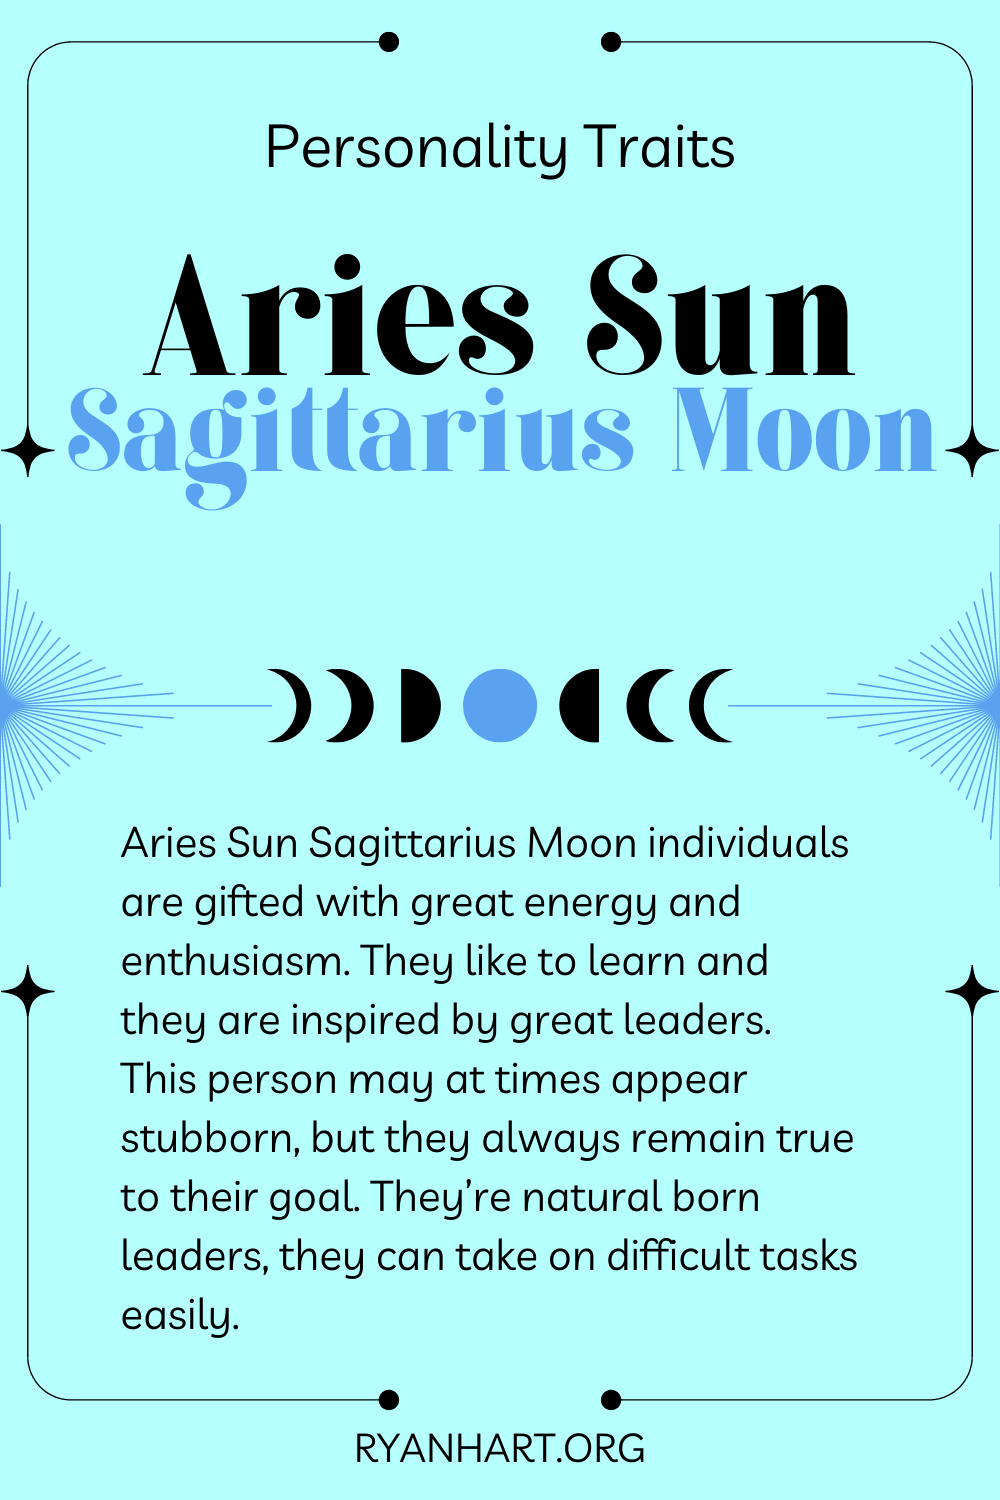 Aries Sun Sagittarius Moon Description